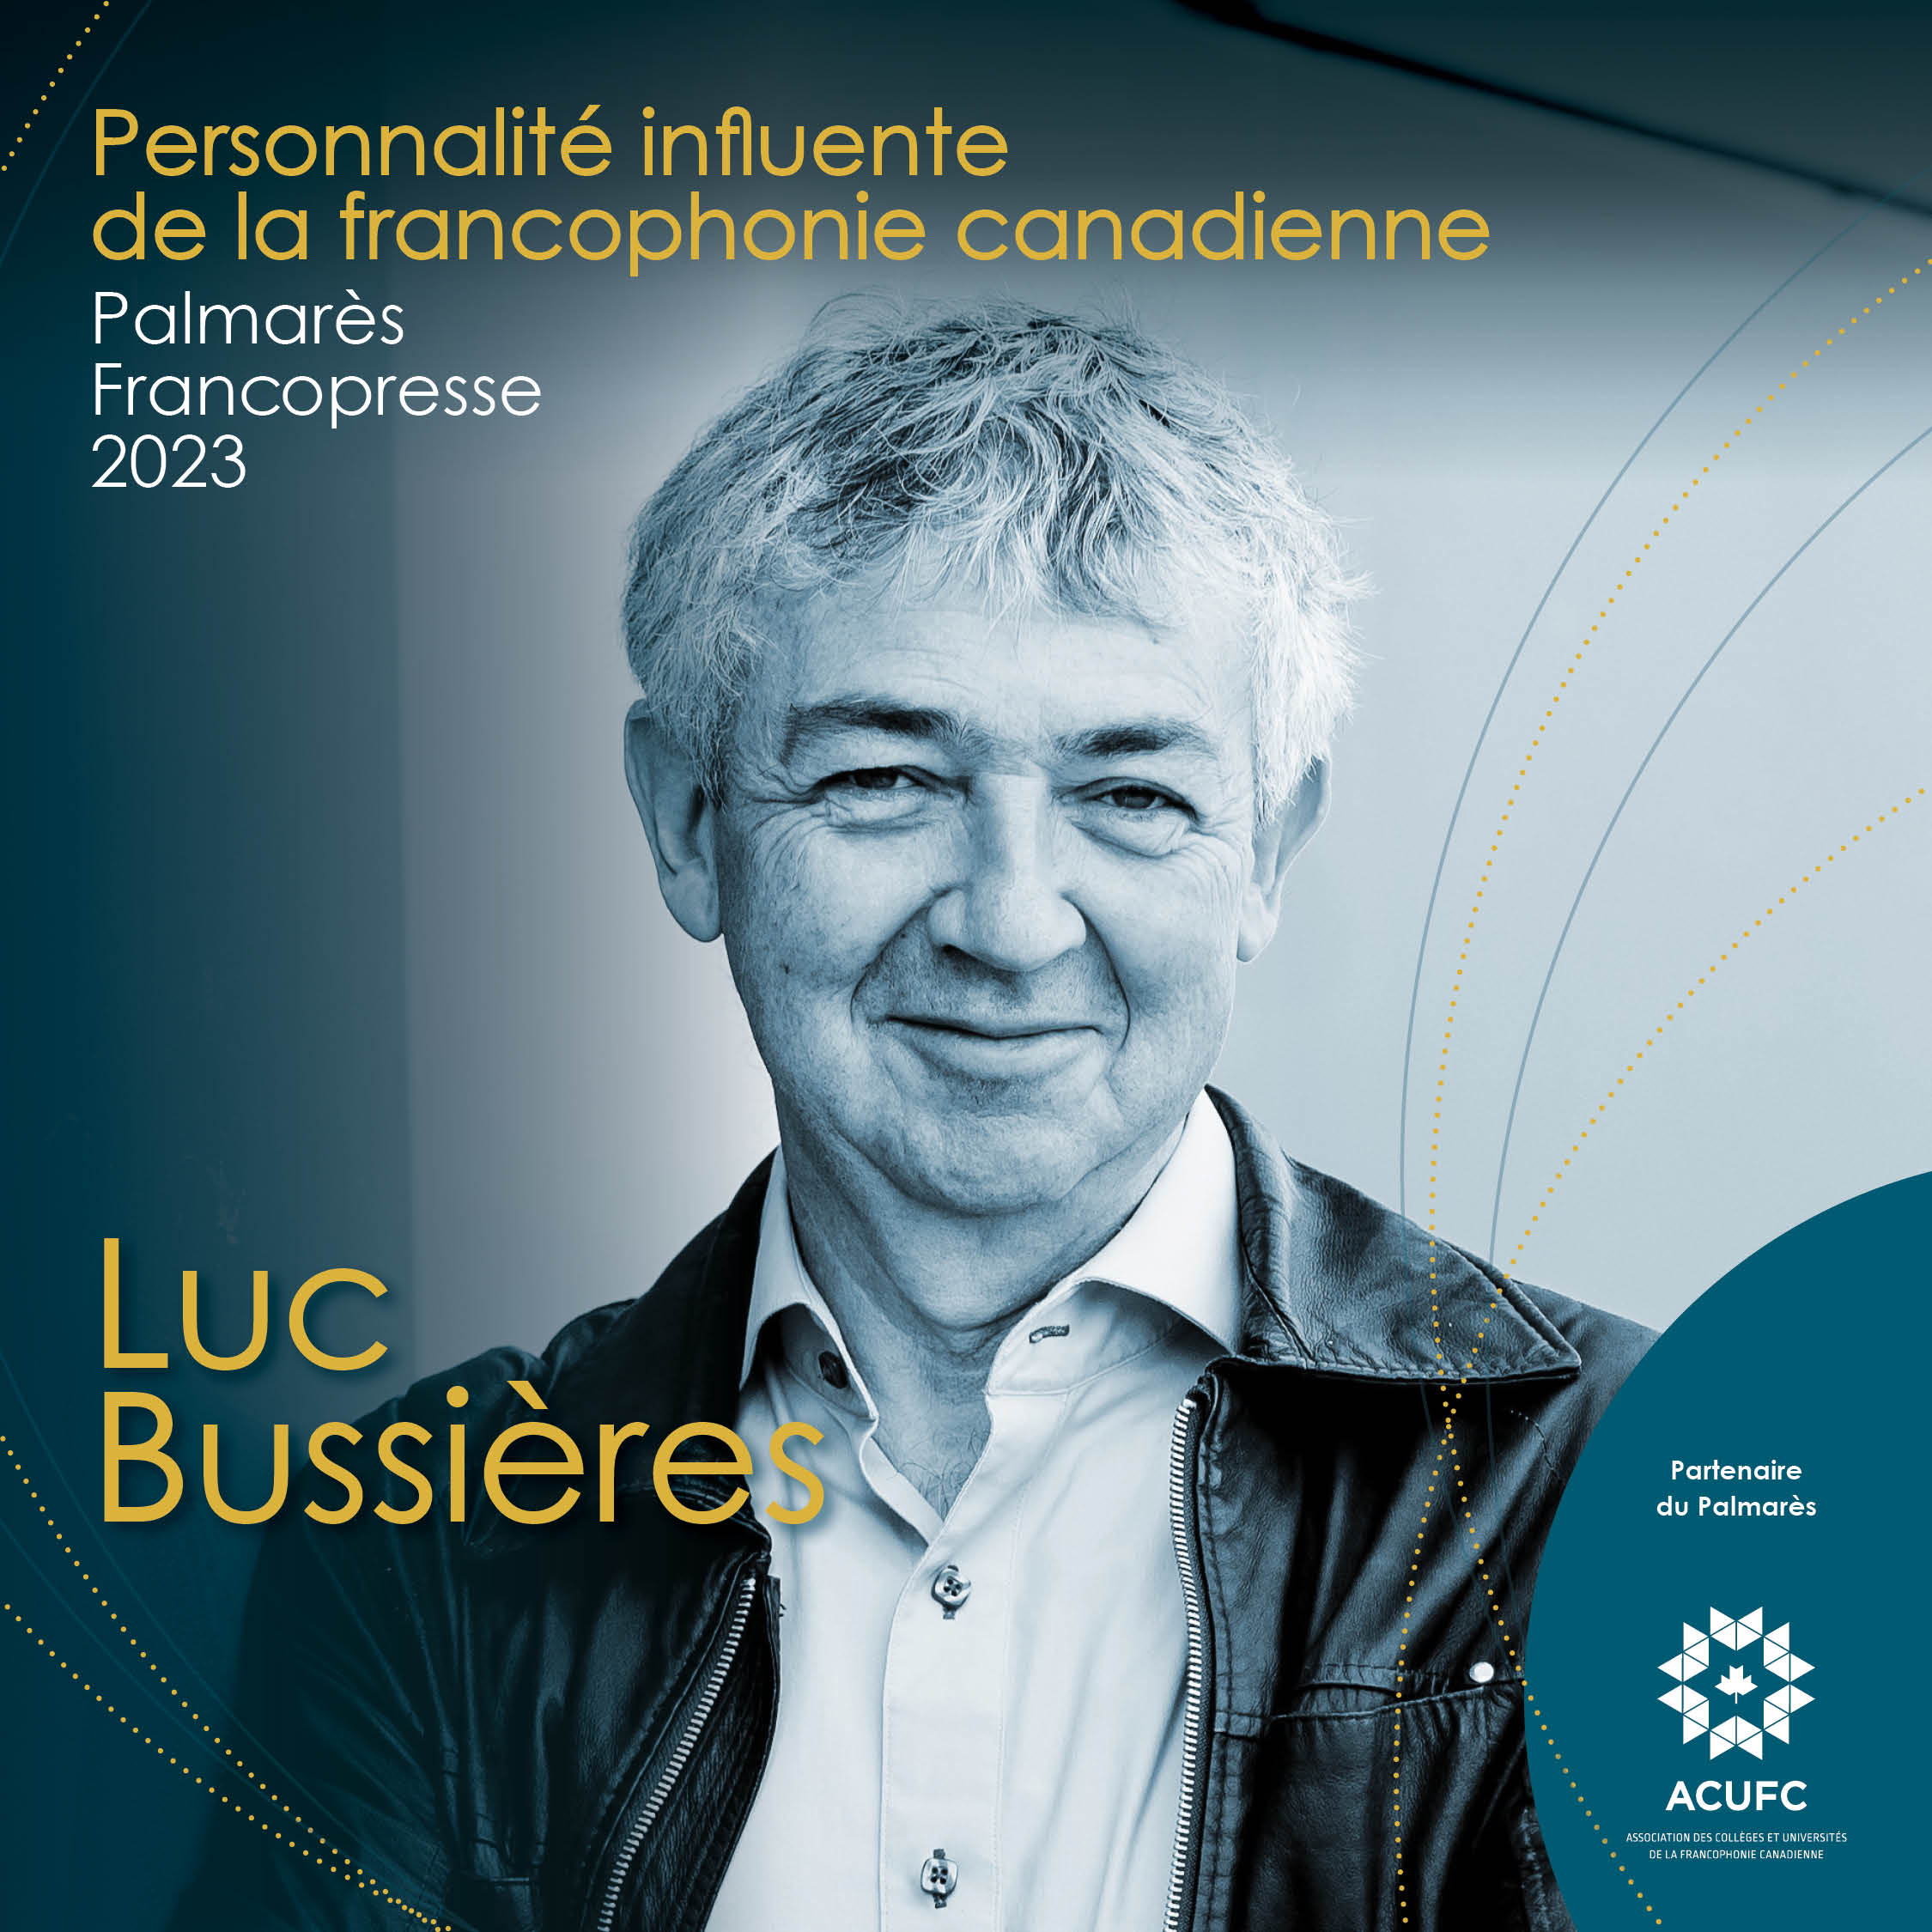 Luc Bussières reconnu pour son impact en francophonie